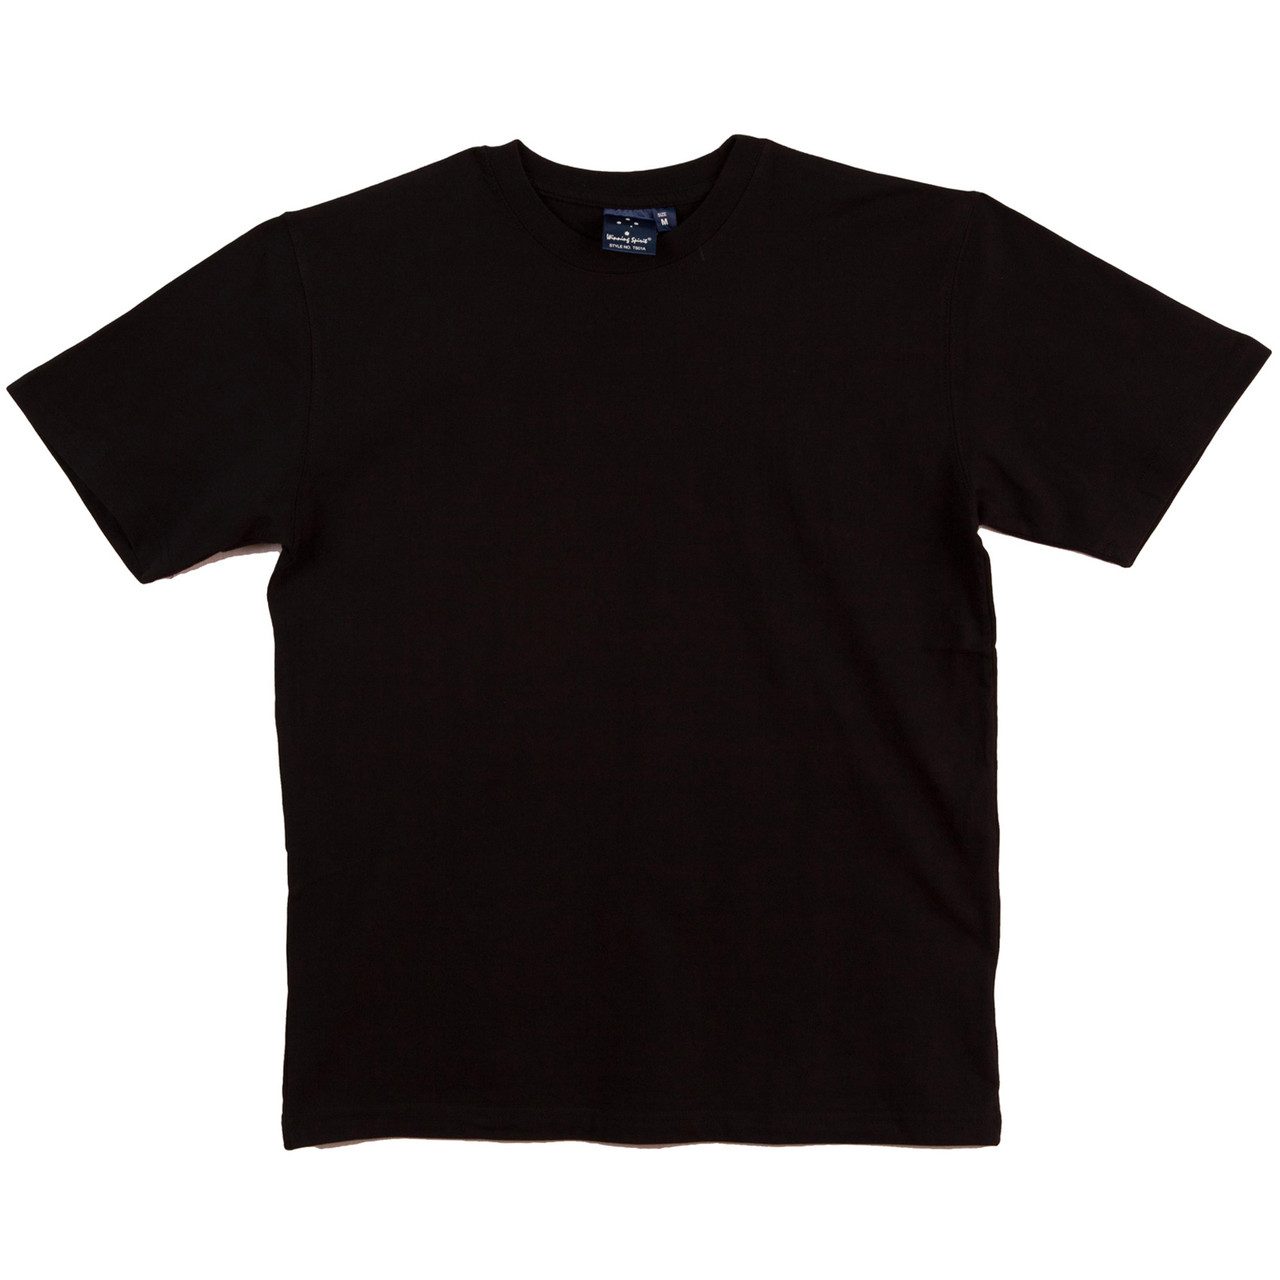 Buy Blank Plain Kids Premium Cotton Tshirts Online | Shop Wholesale